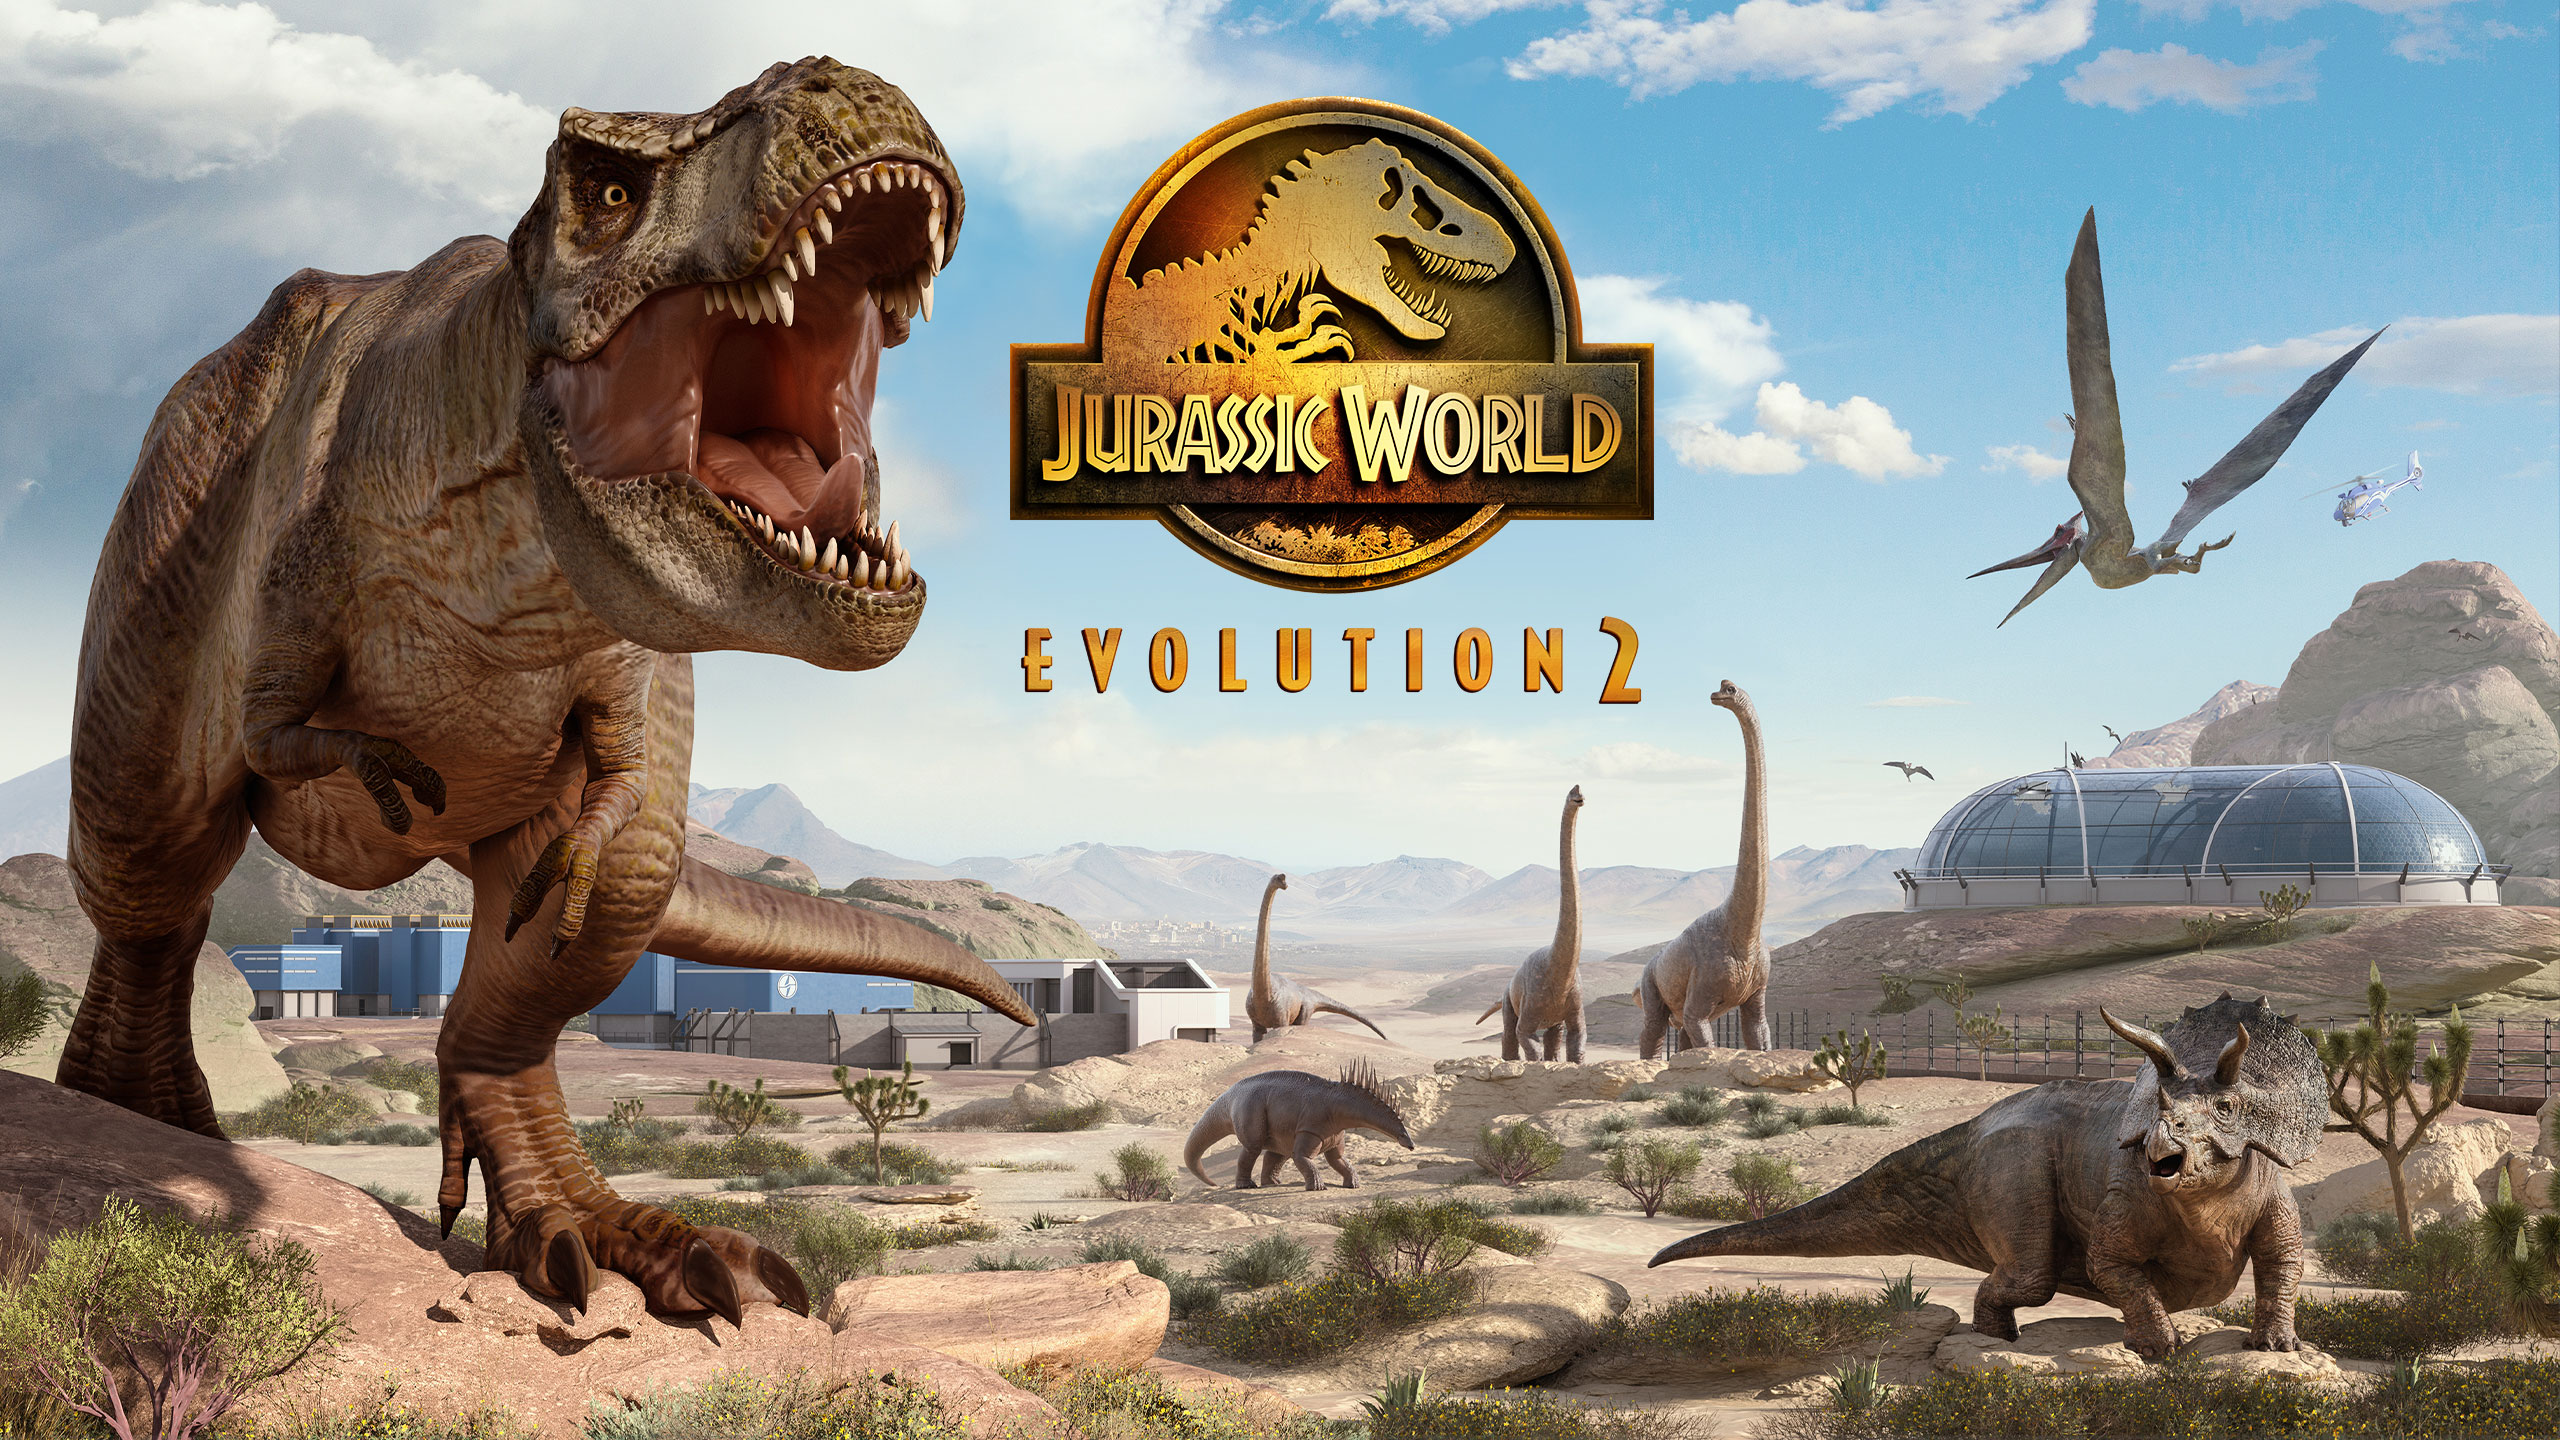 เปิดตัว Jurassic World: Evolution 2 ภาคต่อของซีรีส์สร้างสวนไดโนเสาร์สุดยิ่งใหญ่ พร้อมกำหนดวางจำหน่ายภายในปี 2021 นี้